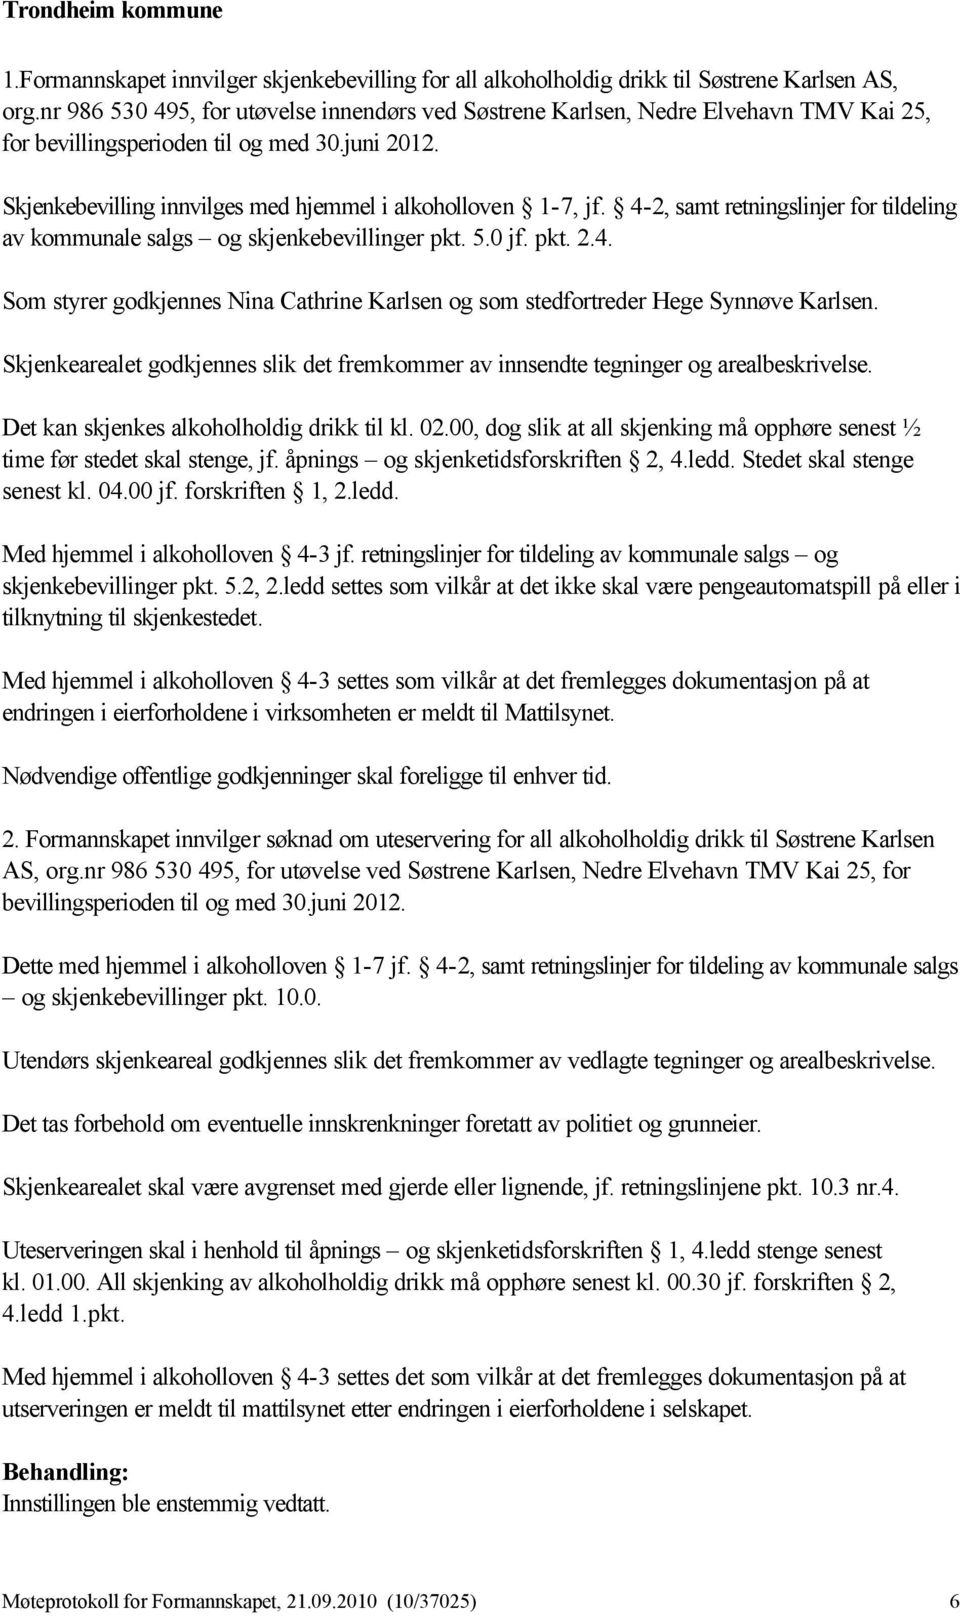 4-2, samt retningslinjer for tildeling av kommunale salgs og skjenkebevillinger pkt. 5.0 jf. pkt. 2.4. Som styrer godkjennes Nina Cathrine Karlsen og som stedfortreder Hege Synnøve Karlsen.